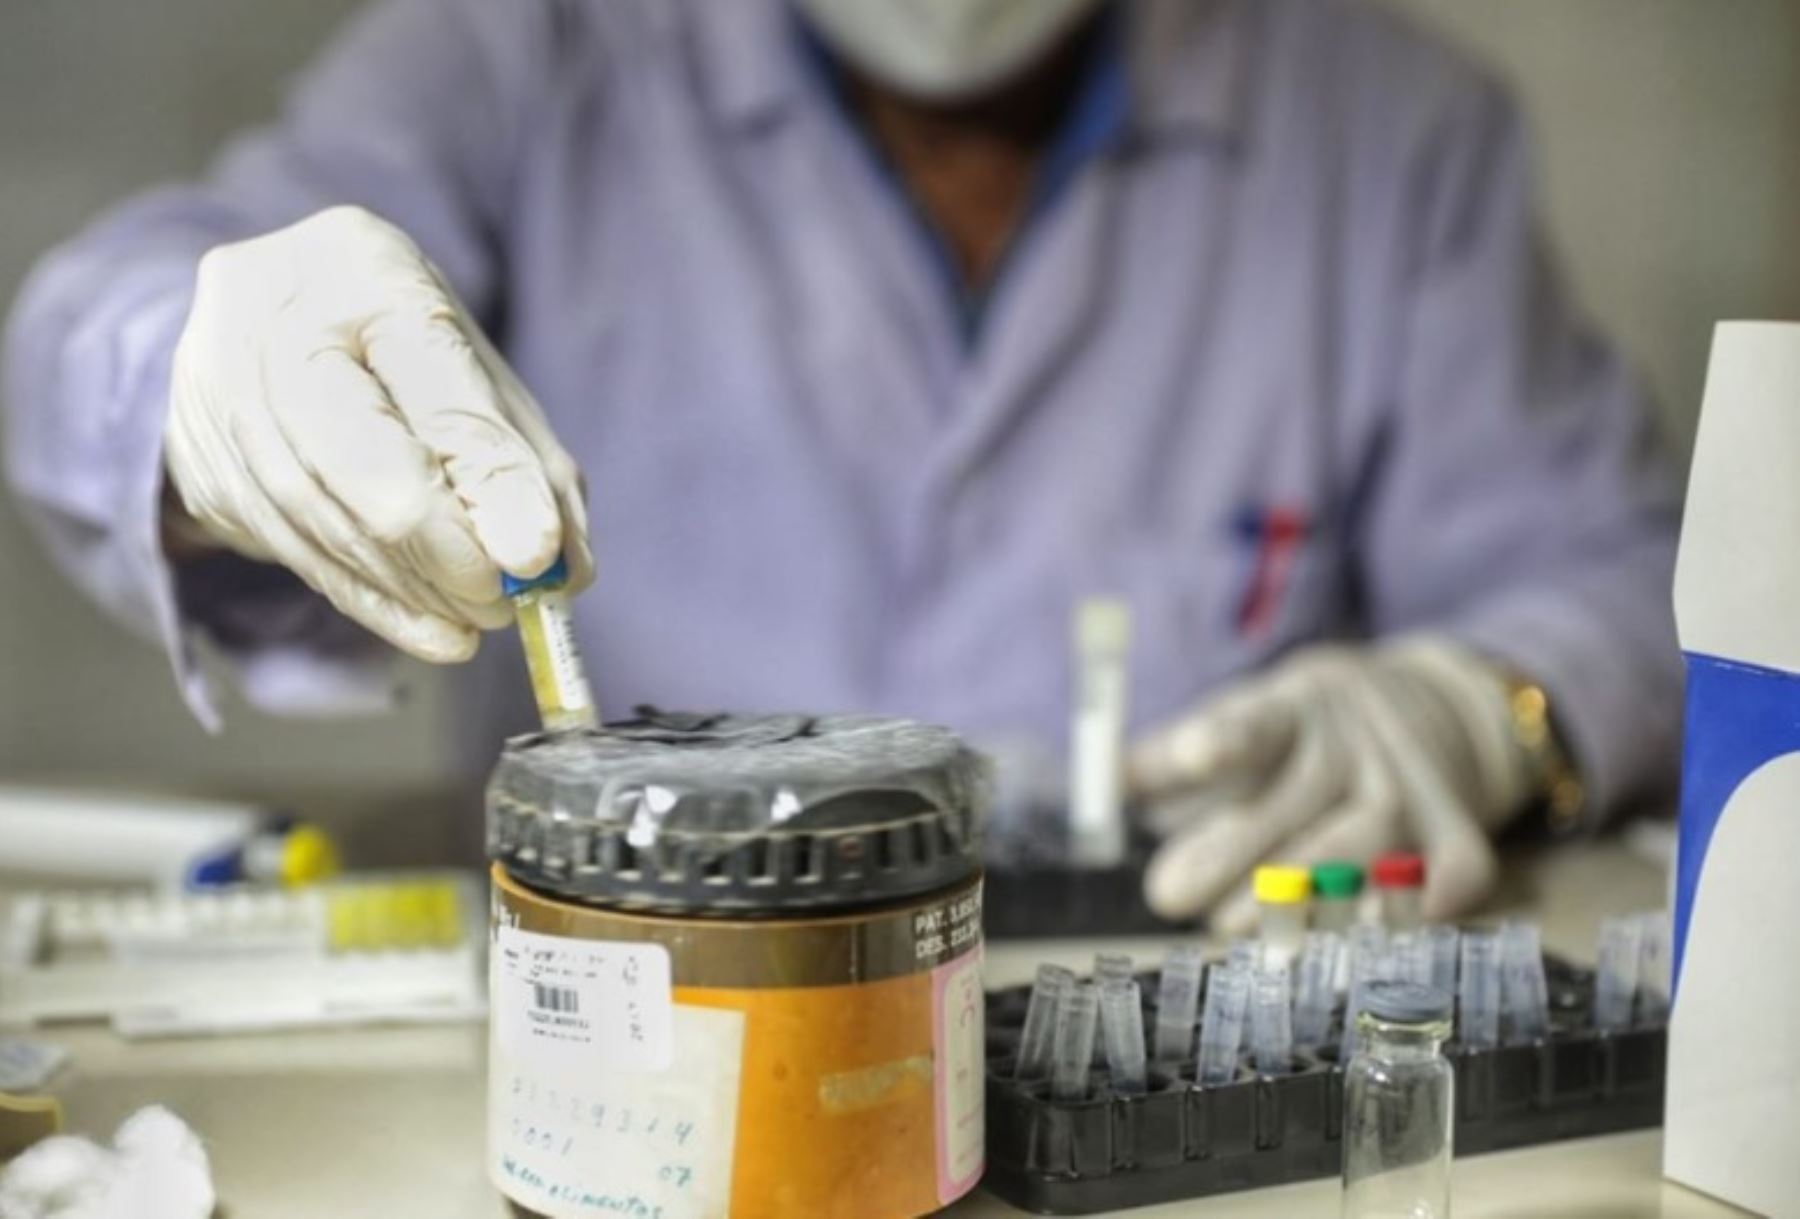 Este fármaco se encuentra en fase de pruebas en Barcelona mediante técnicas de bioingeniería. Foto: ANDINA/difusión.